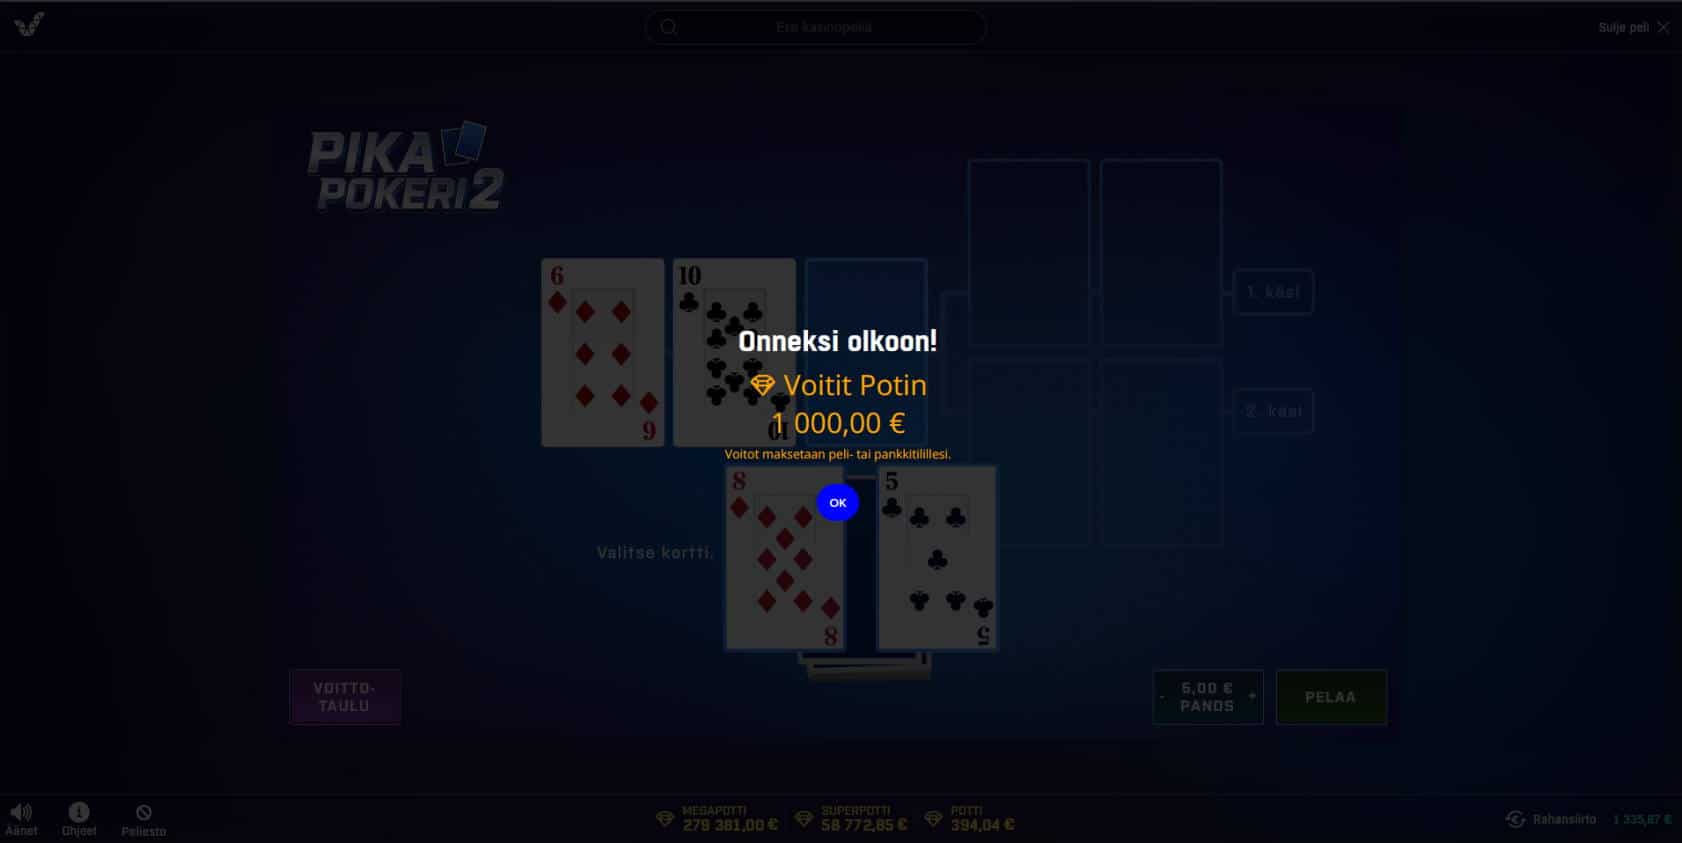 Pika Pokeri 2 Casino win picture by Kari Grandi 11.4.2022 1000e 200X